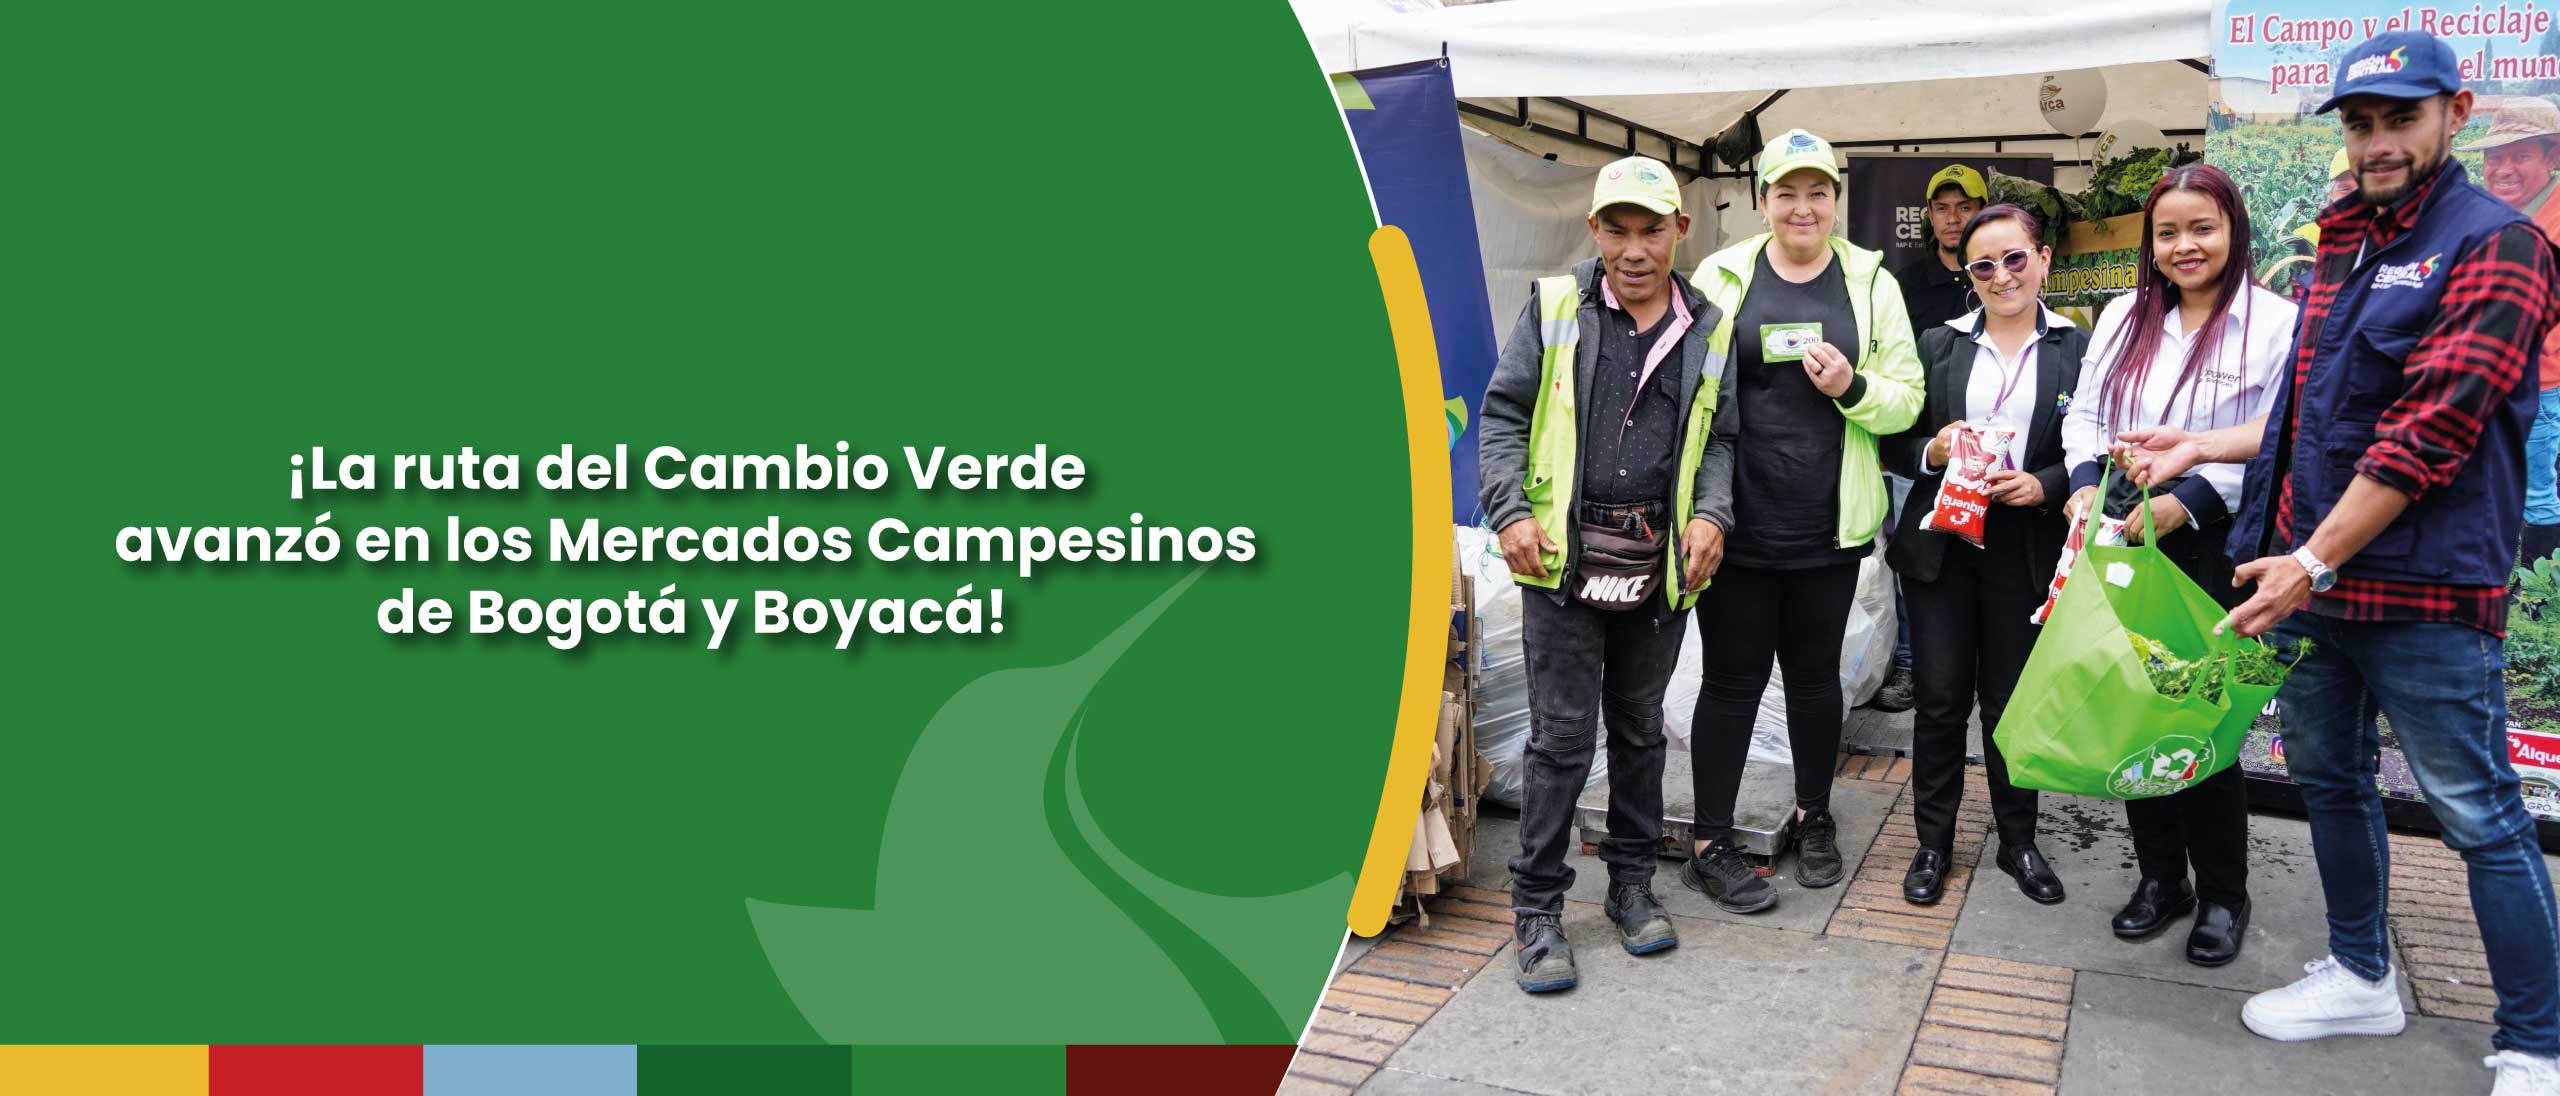 ¡La ruta del Cambio Verde avanzó en los Mercados Campesinos de Bogotá, Boyacá!